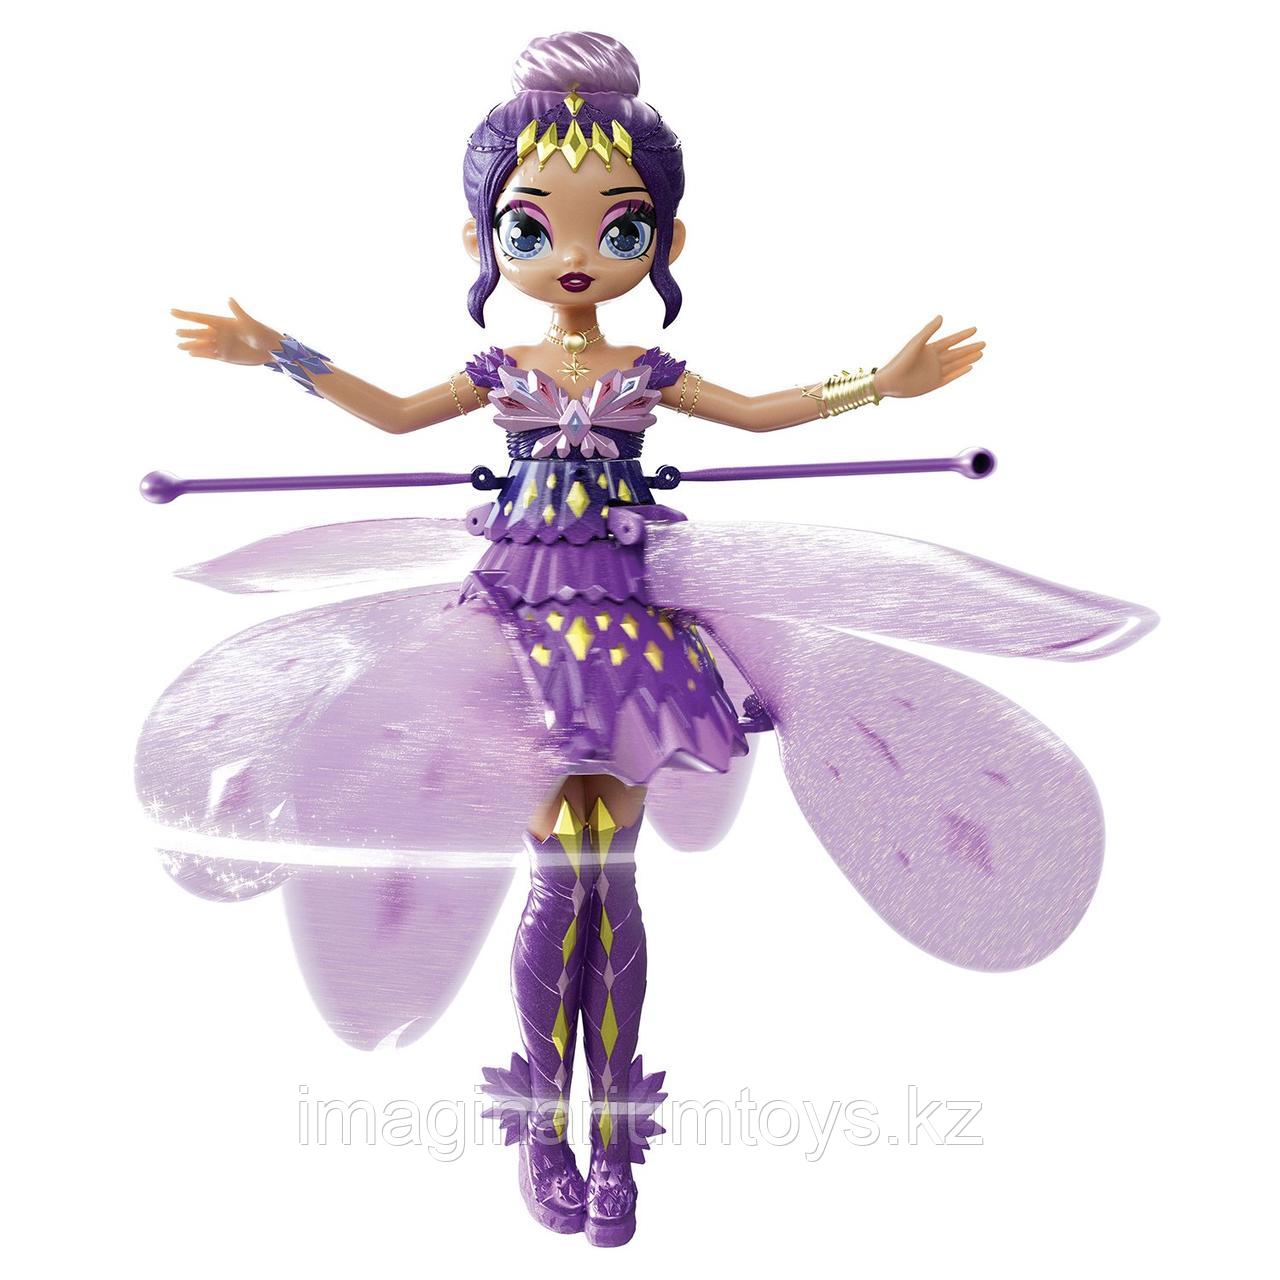 Летающая кукла фея Hatchimals Пикси сиреневая, фото 1